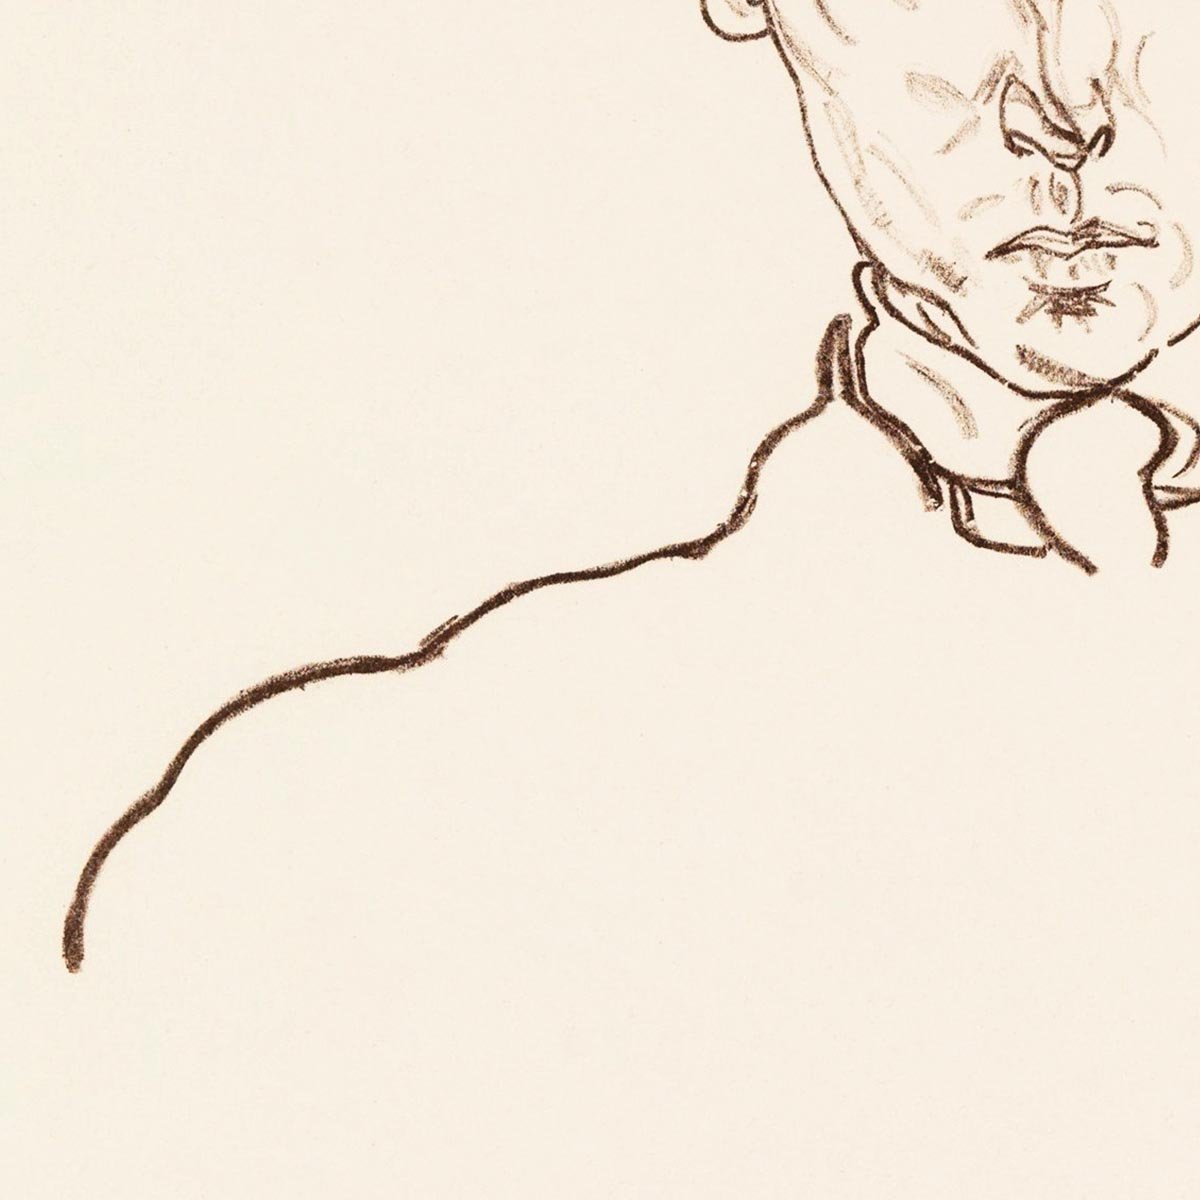 Portrait of Paris von Gütersloh by Egon Schiele